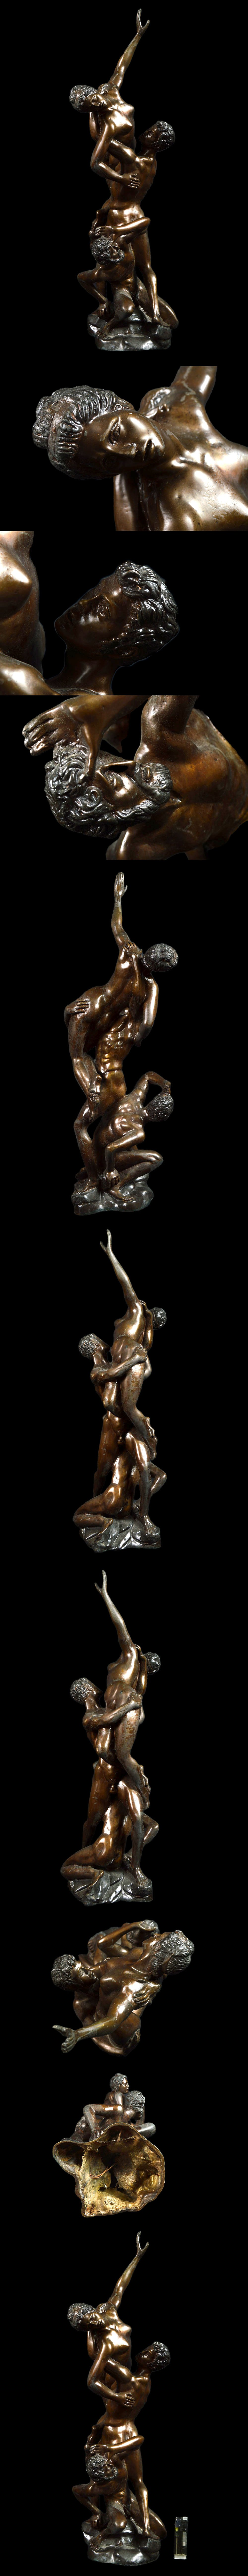 格安特価某資産家蔵出 西洋アンティーク 裸像 男性像 女性像 ブロンズ像 重さ8.22kg 古美術品(旧家蔵出)AA541 西洋彫刻